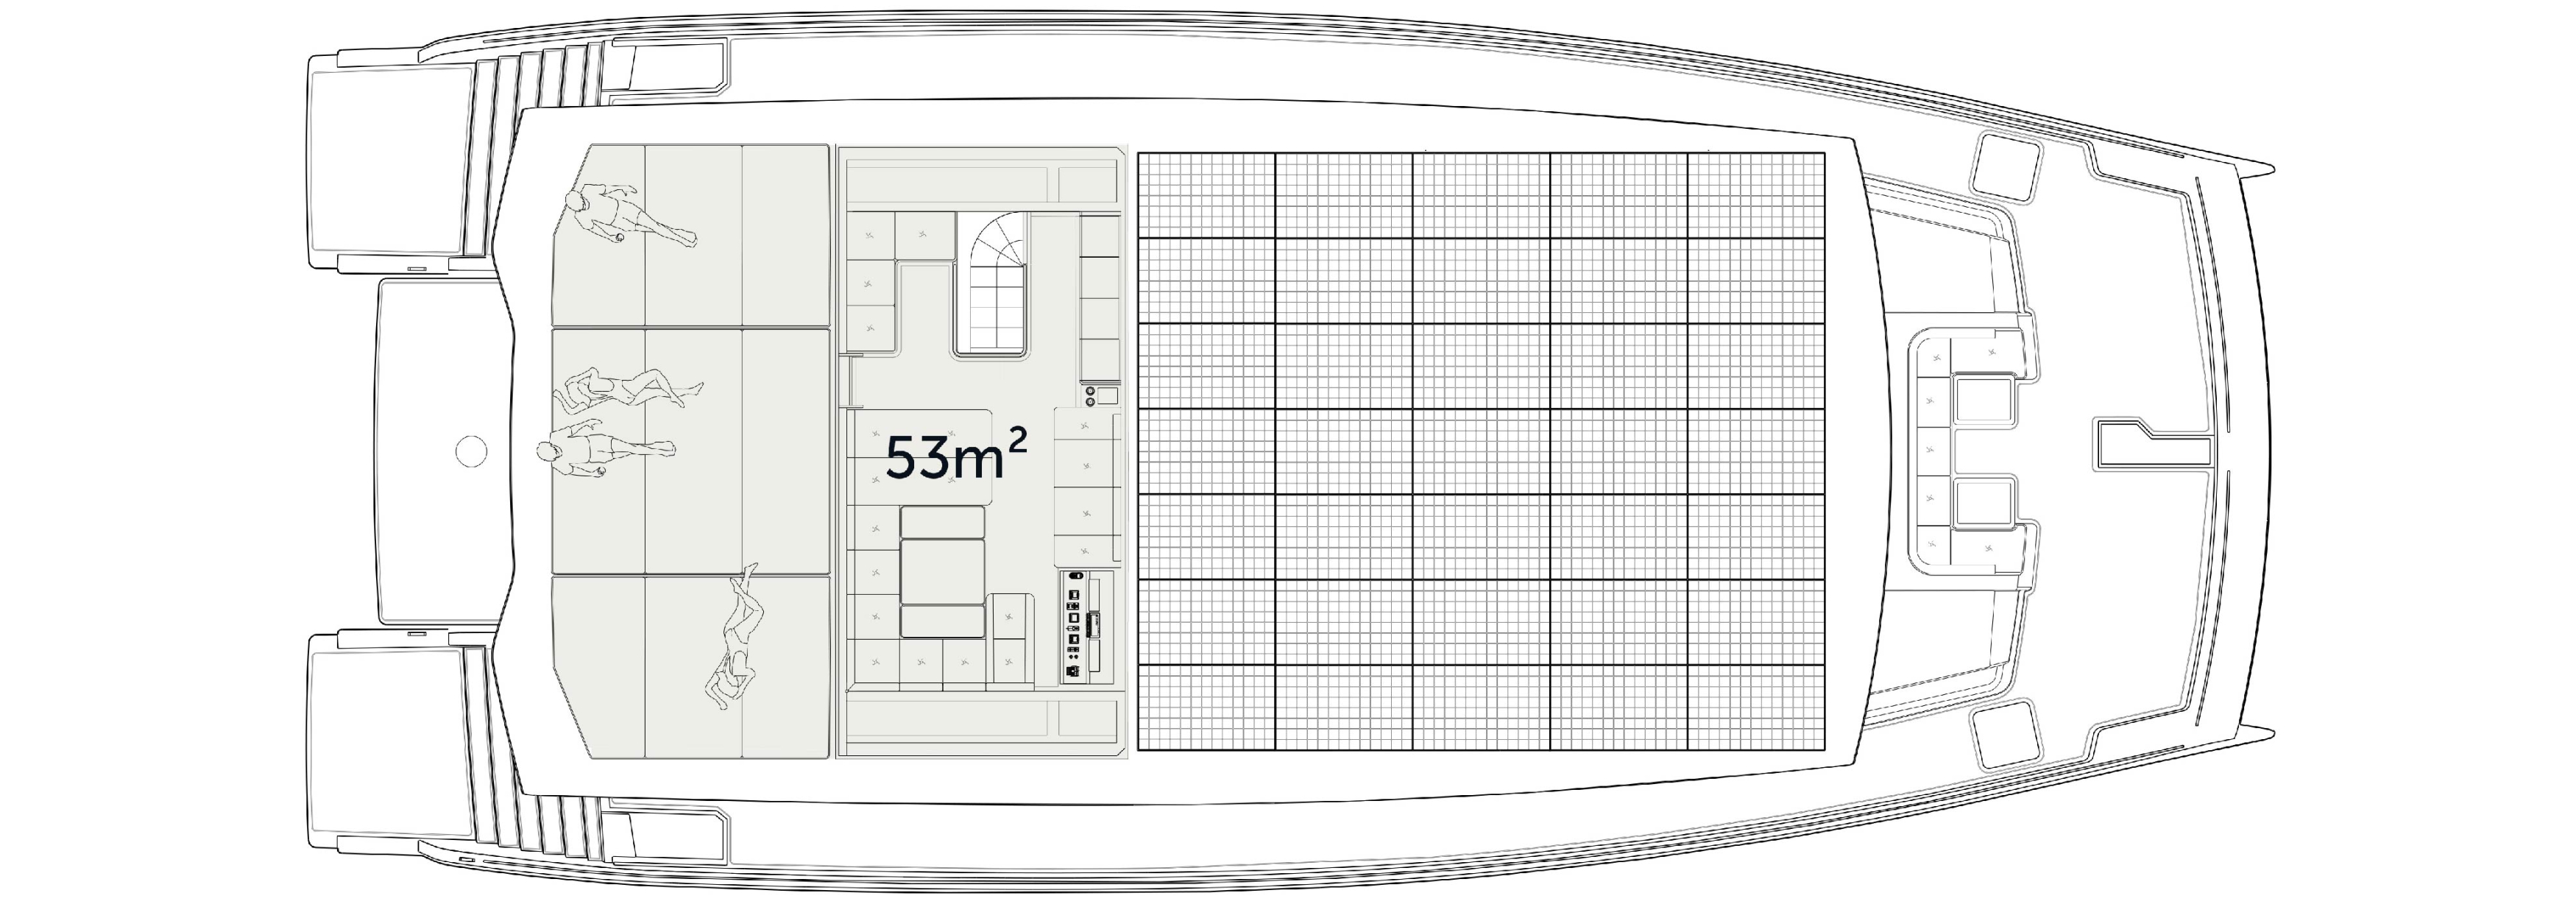 Upper deck flybridge area plan